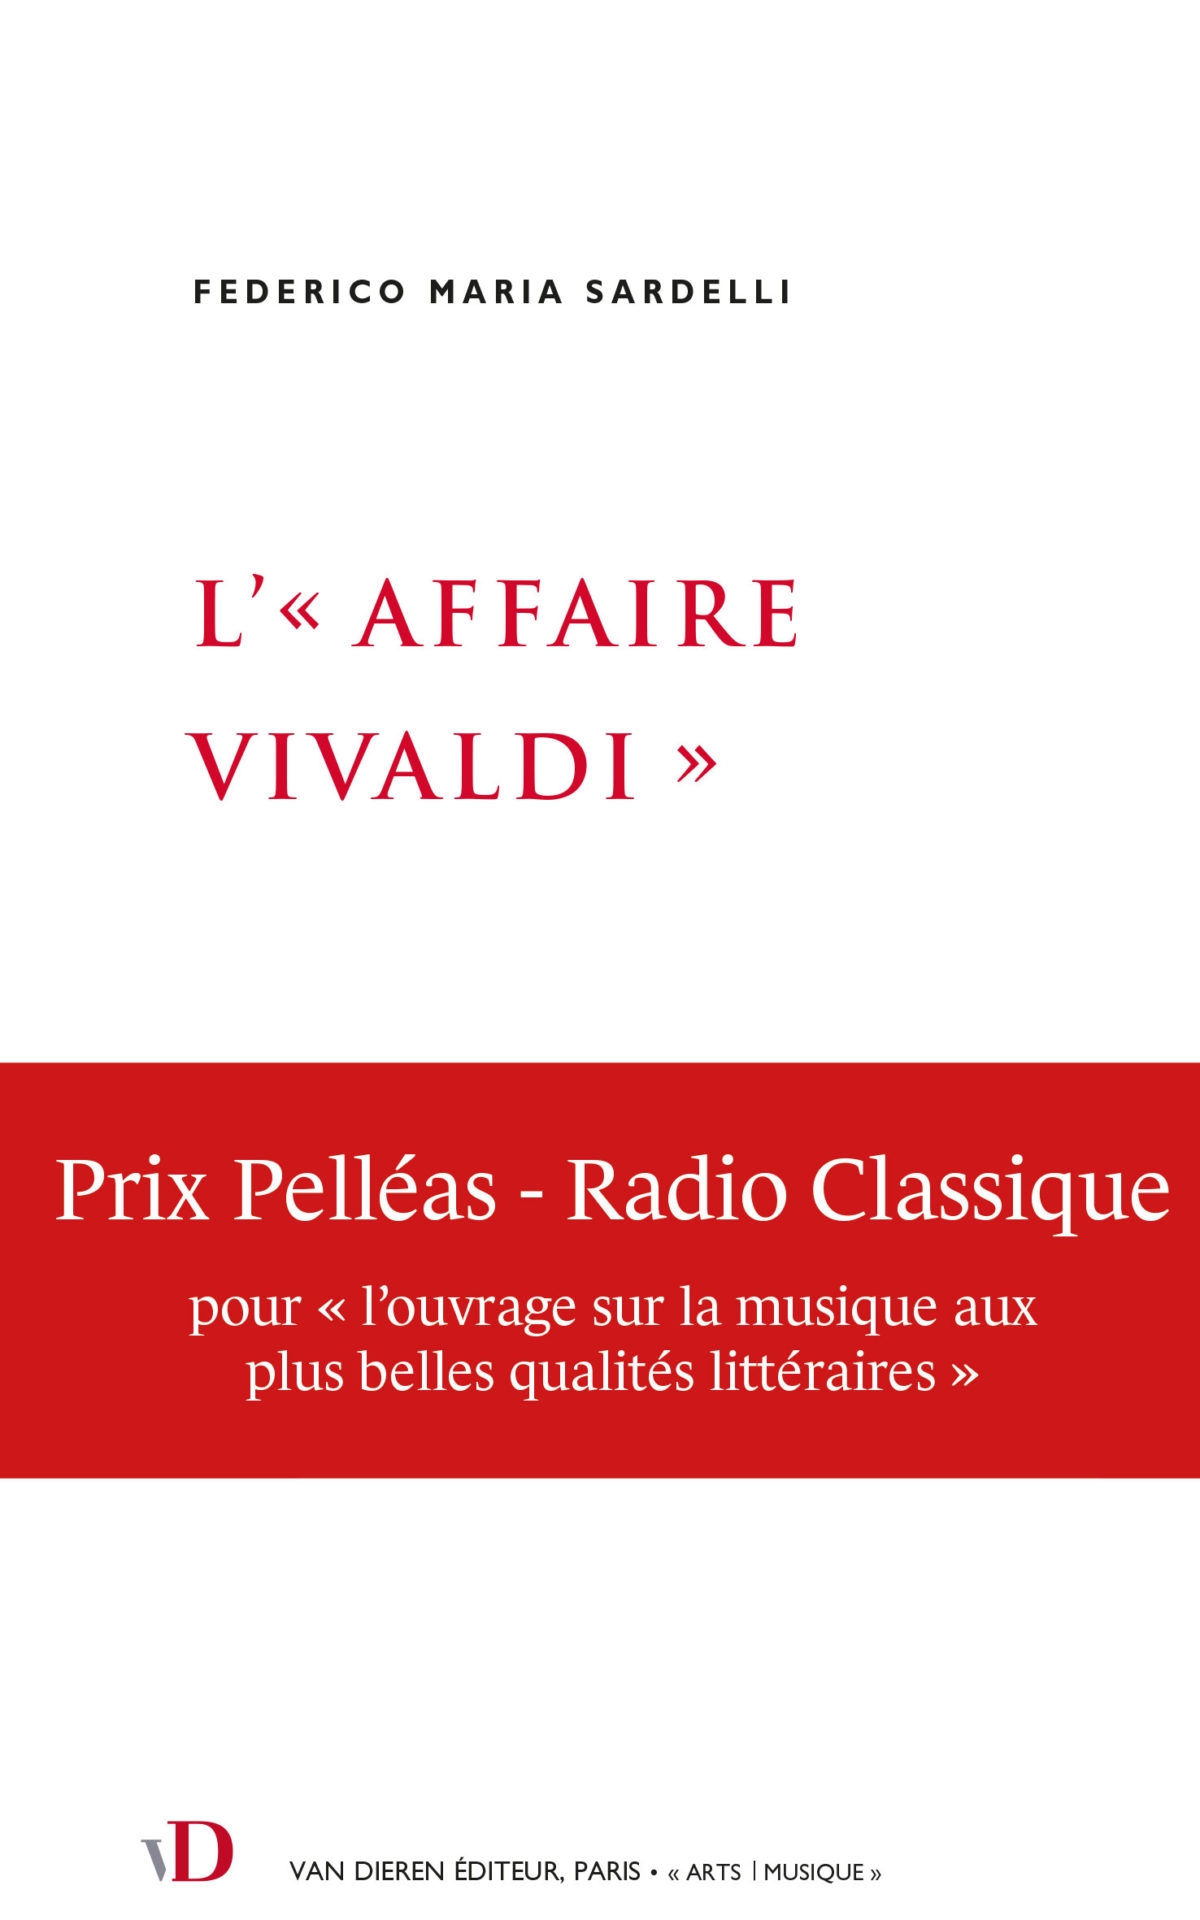 L’«Affaire Vivaldi» Federico Maria Sardelli (Van Dieren) traduit par Martine Legein